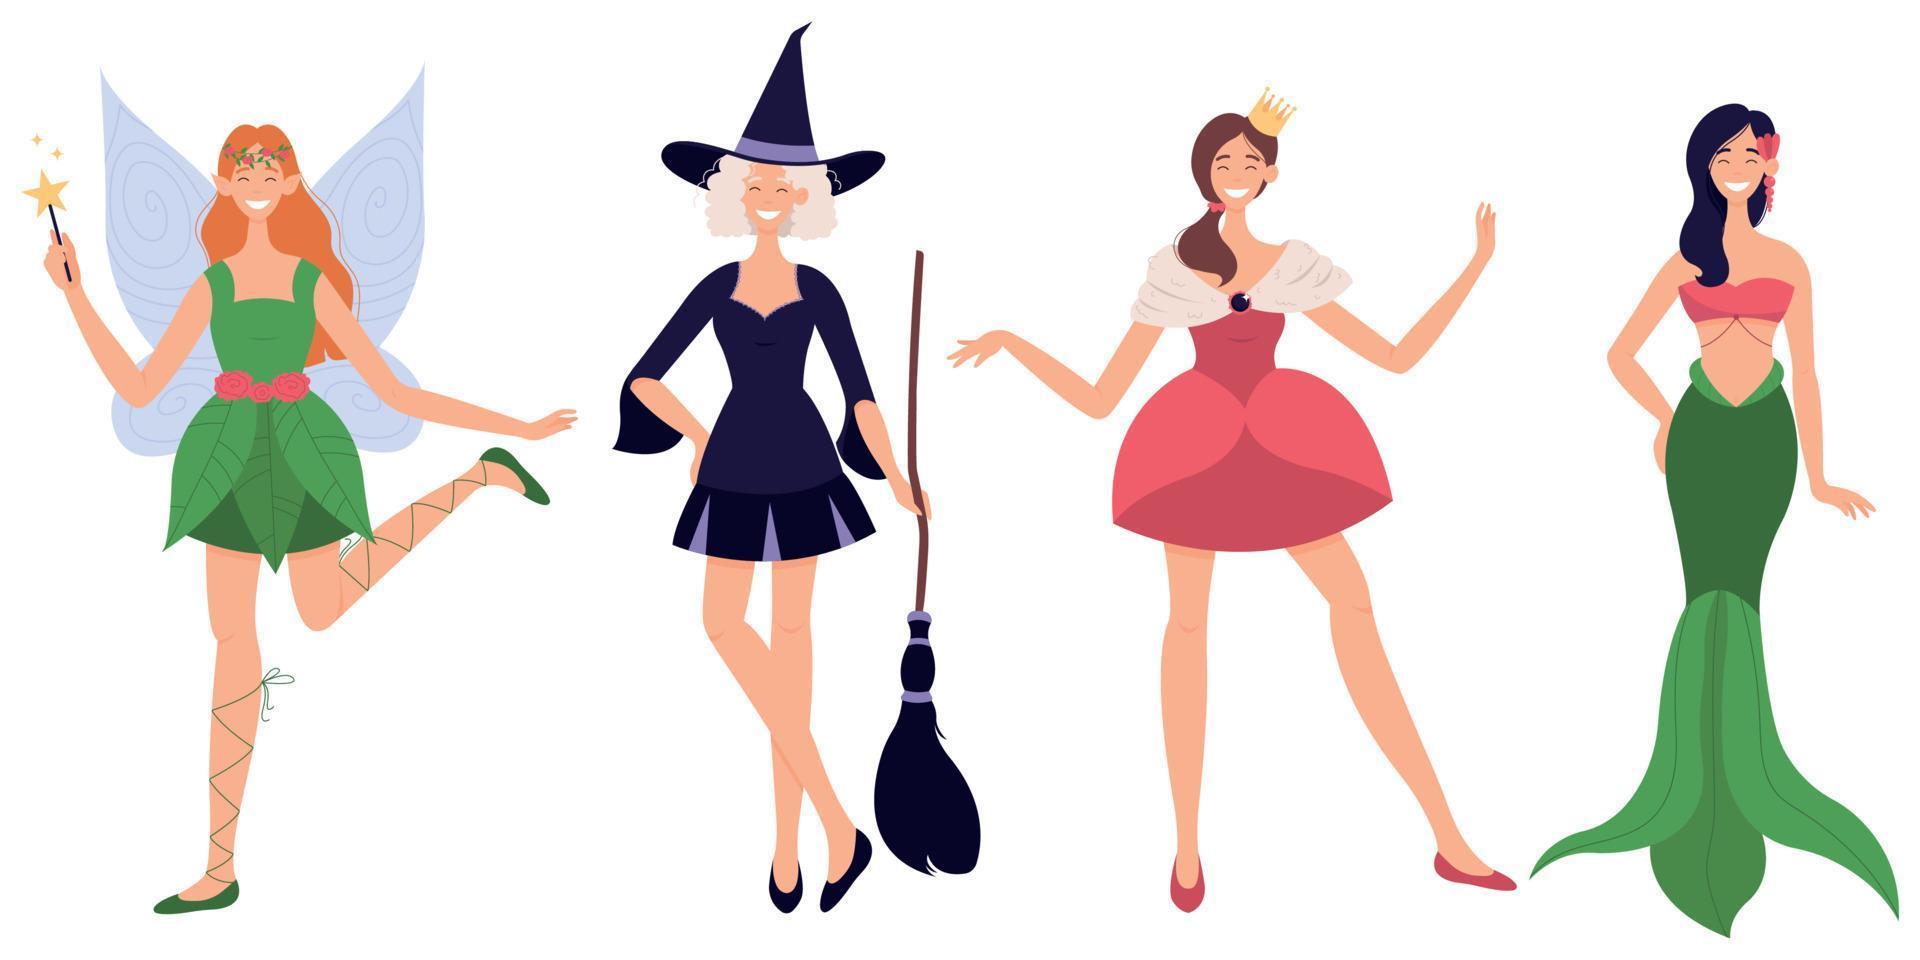 halloween part tecken i kostymer som vektor illustration. tecknad älva, häxa, prinsessa och sjöjungfru står tillsammans isolerad på vit bakgrund.